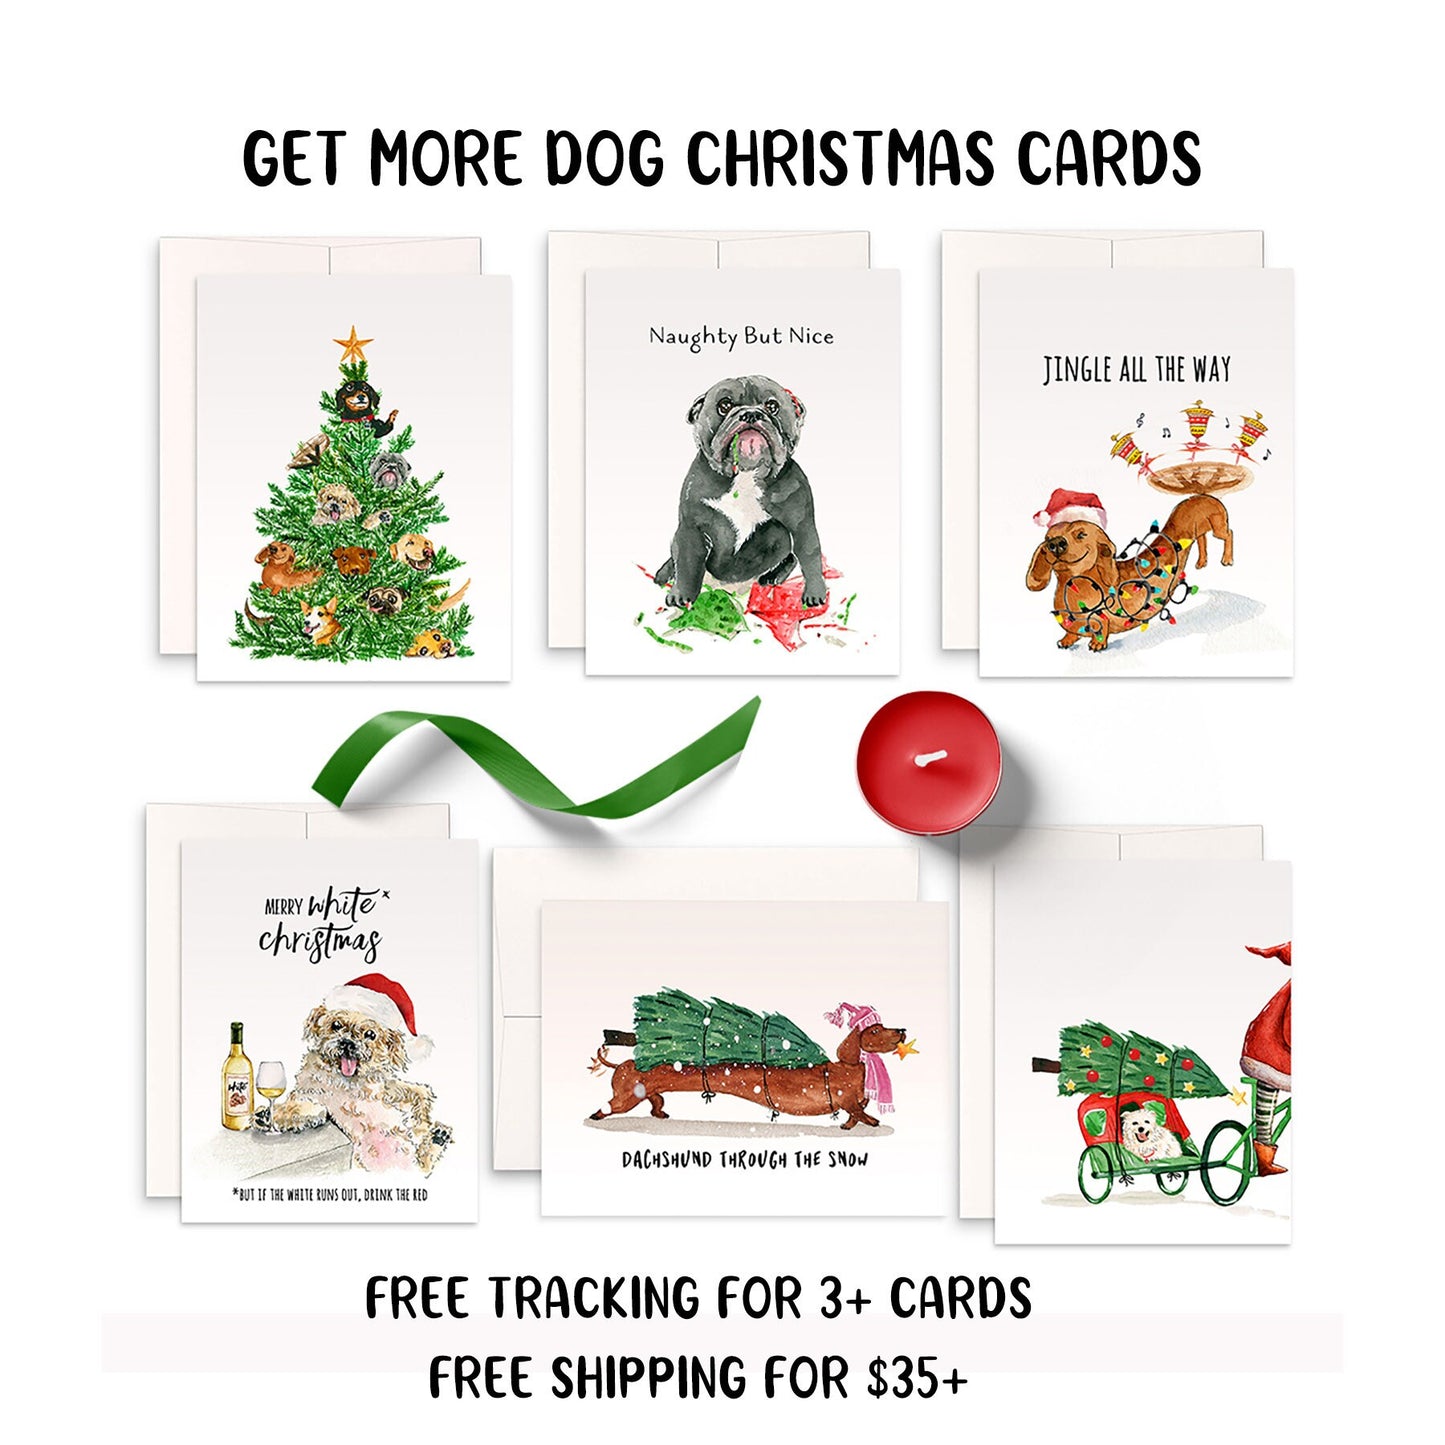 Funny Crab Santa Claws Christmas Card, Funny Holidays Card, Mistletoe Christmas Card, Christmas Humor, Funny Xmas Card Christmas Party Drink